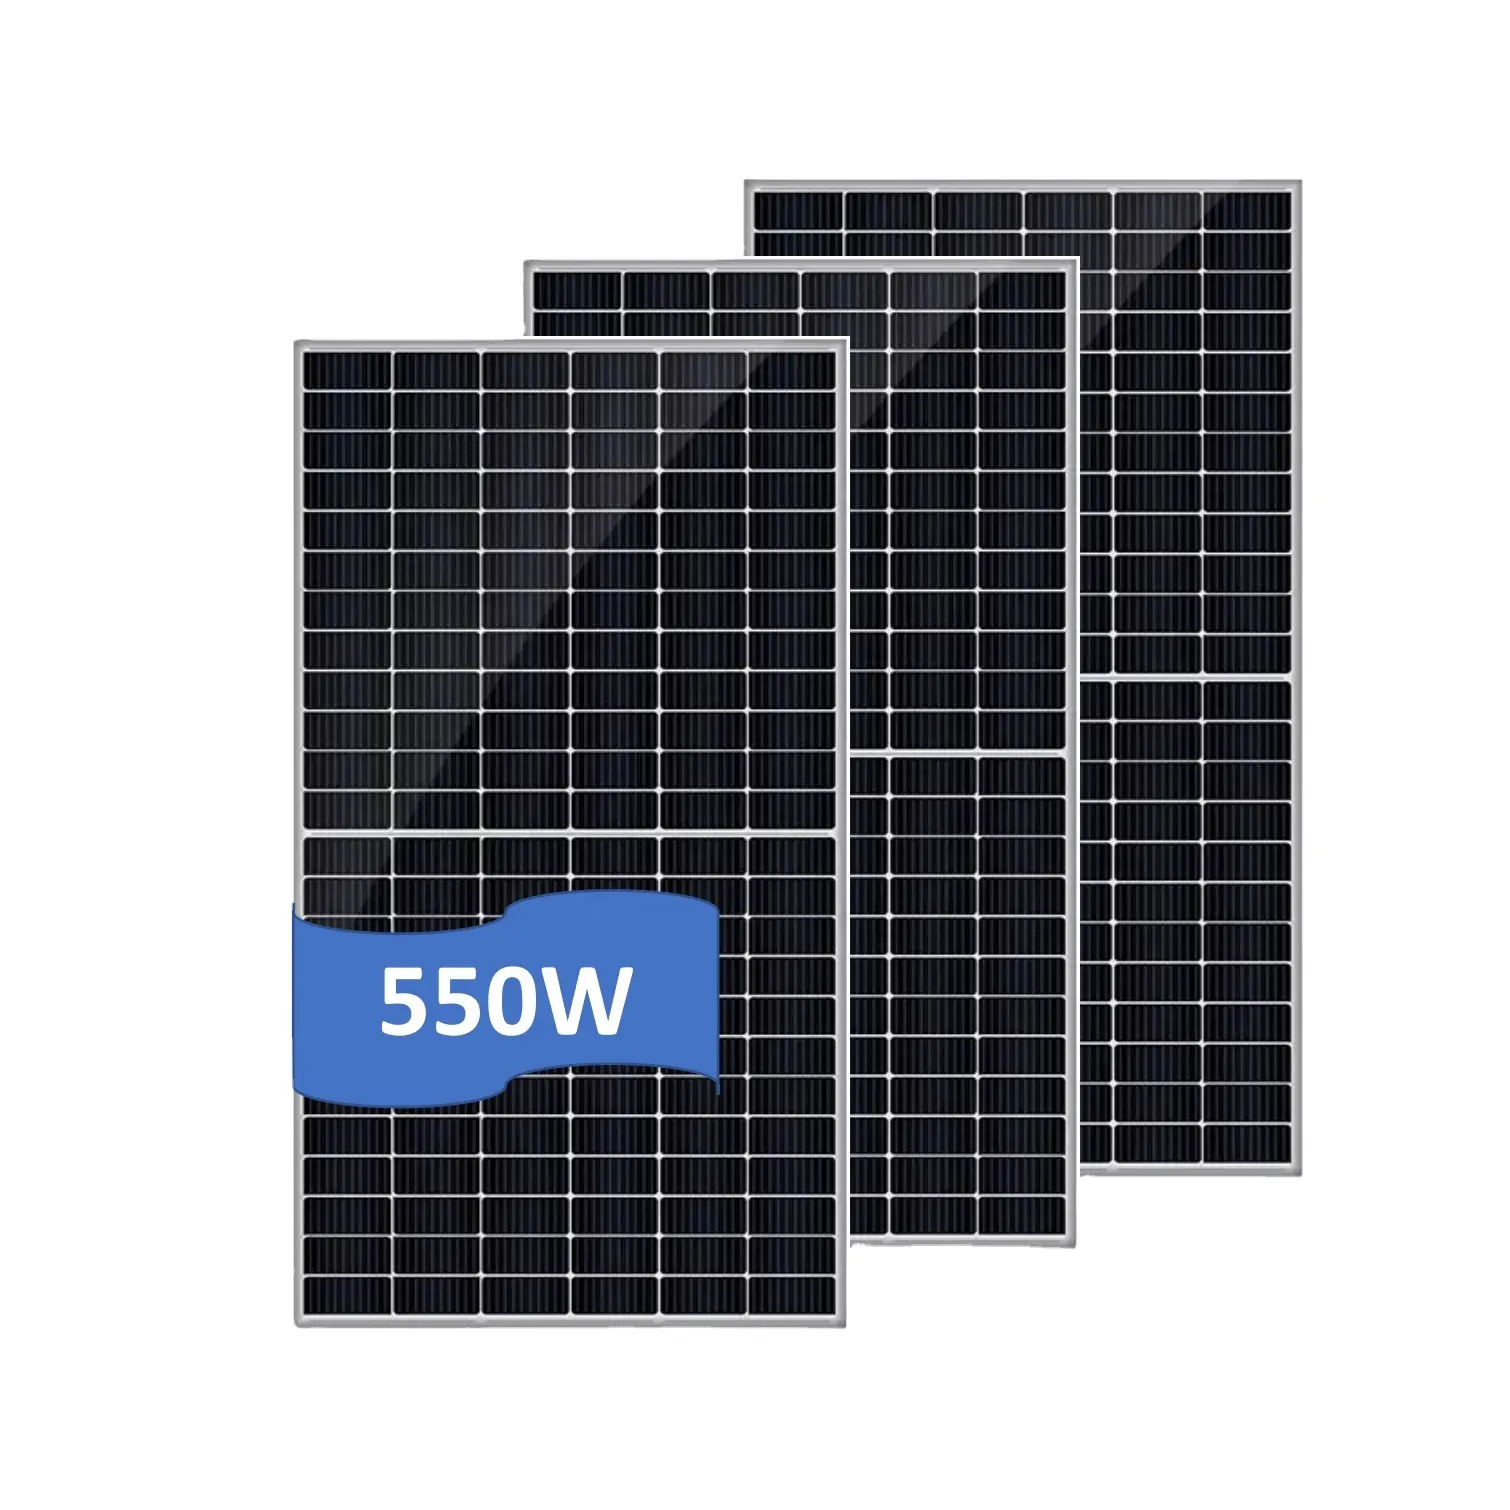 REDSUNソーラープレート550ワット太陽光発電モジュールヨーロッパモノハーフカットソーラーパネルセル550W価格表太陽光発電システム